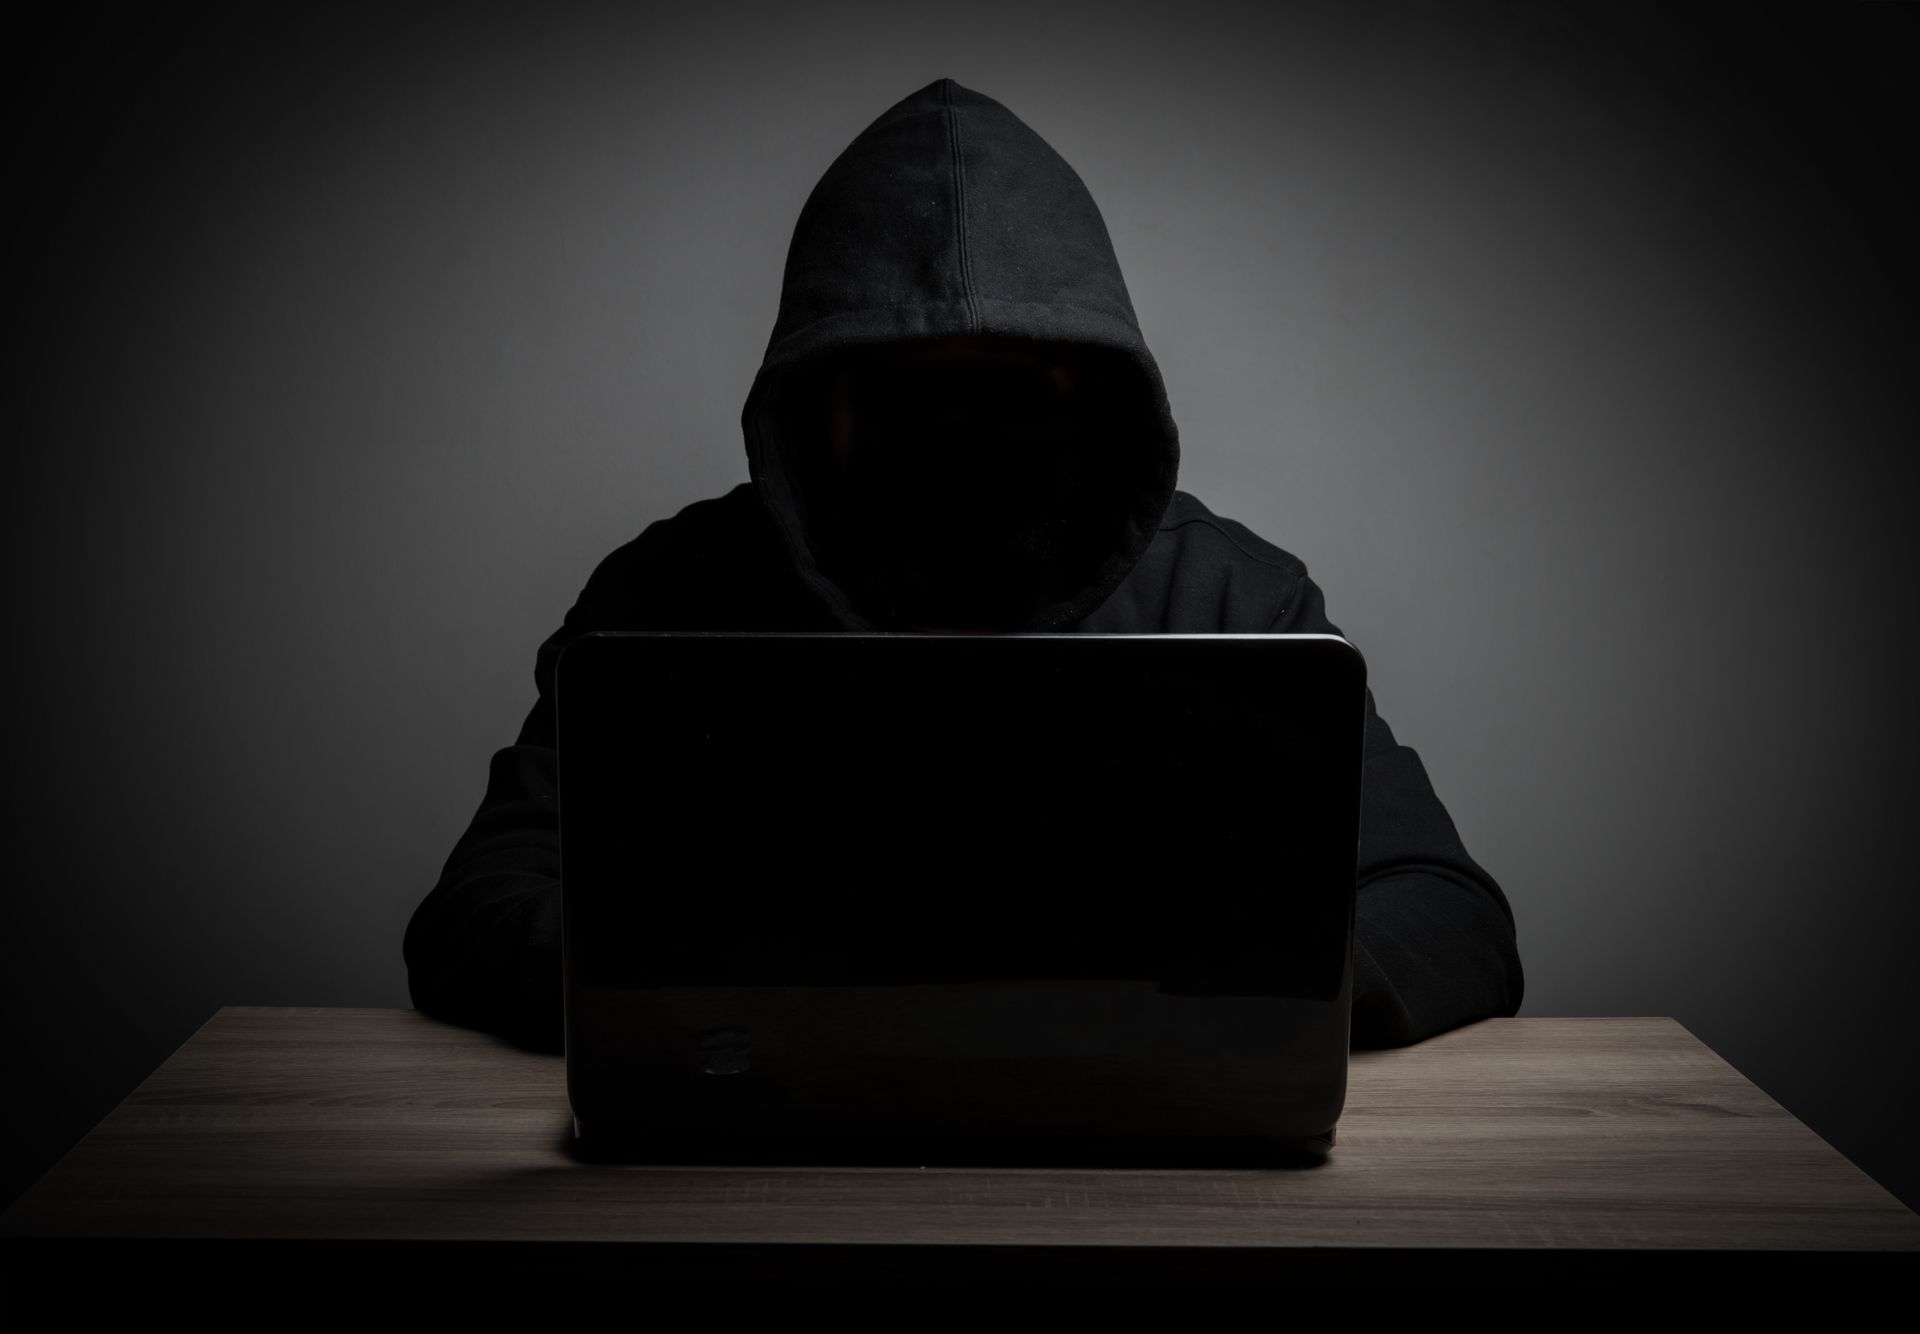 De hackerzin van GTA 6 doorbreken: de impact van Arion Kurtaj in de Lapsus$ cybersaga